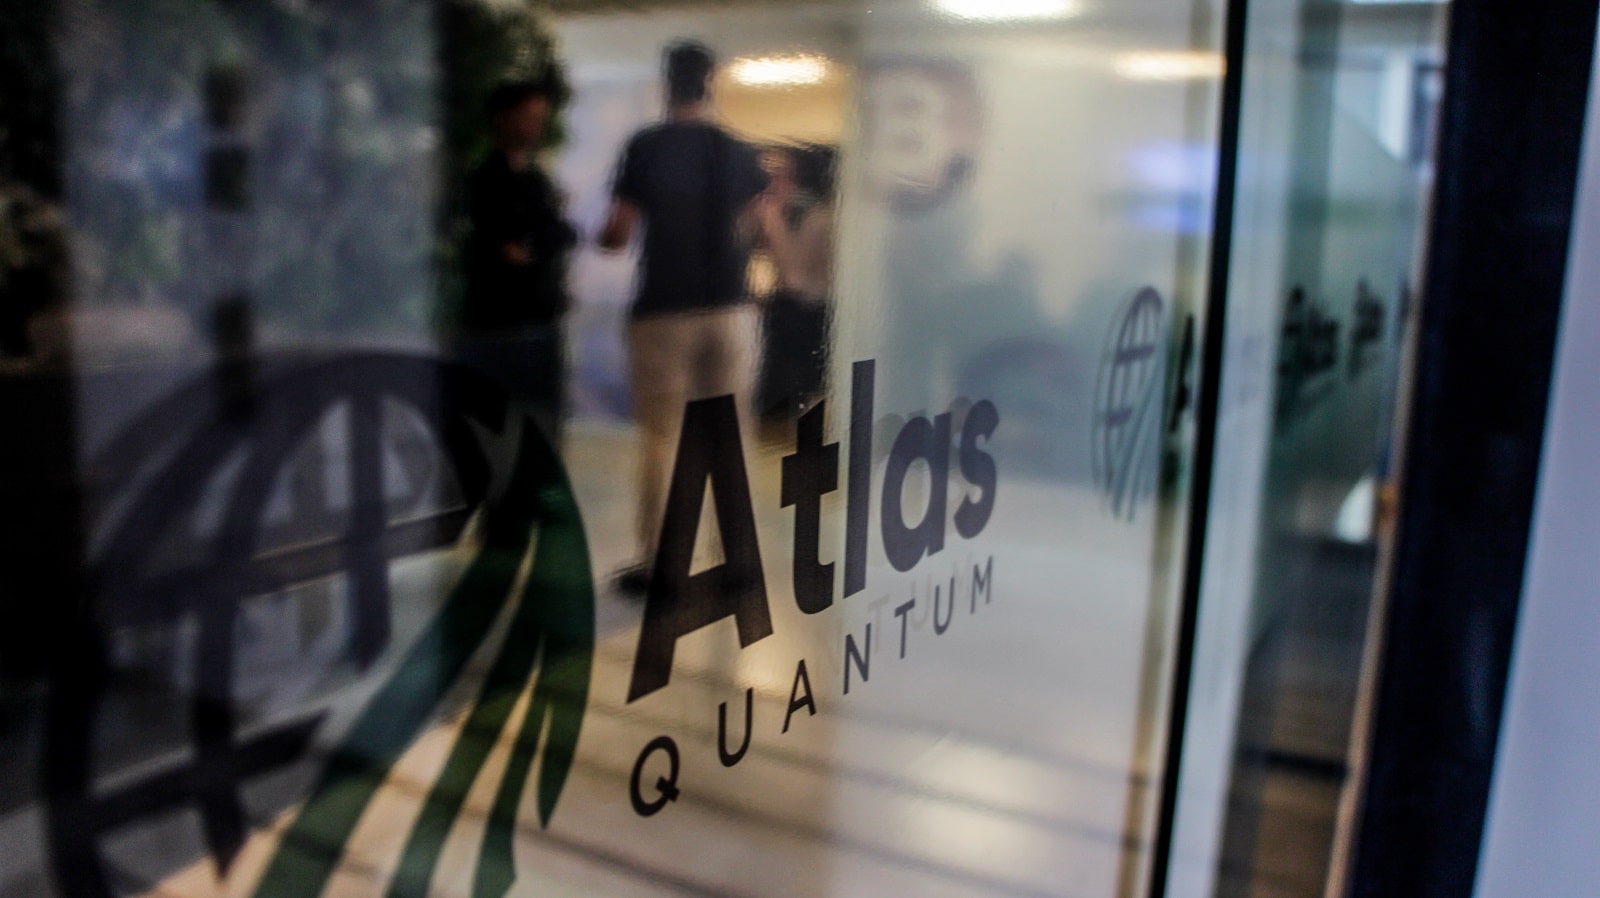 Atlas Quantum avisa que vai pagar